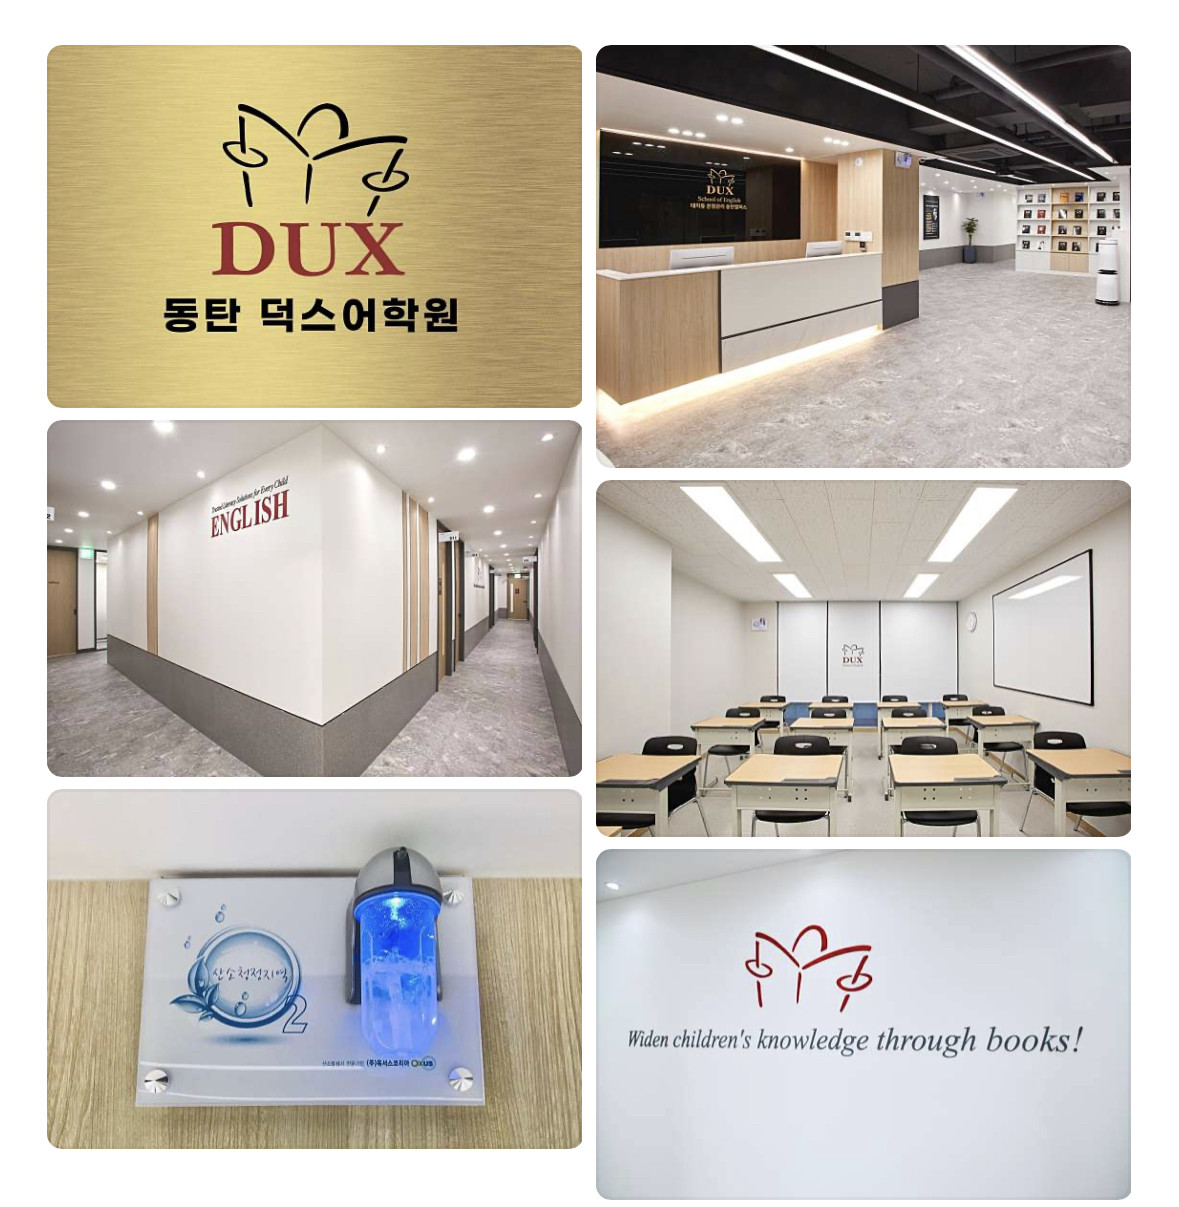 DUX Dongtan Branch